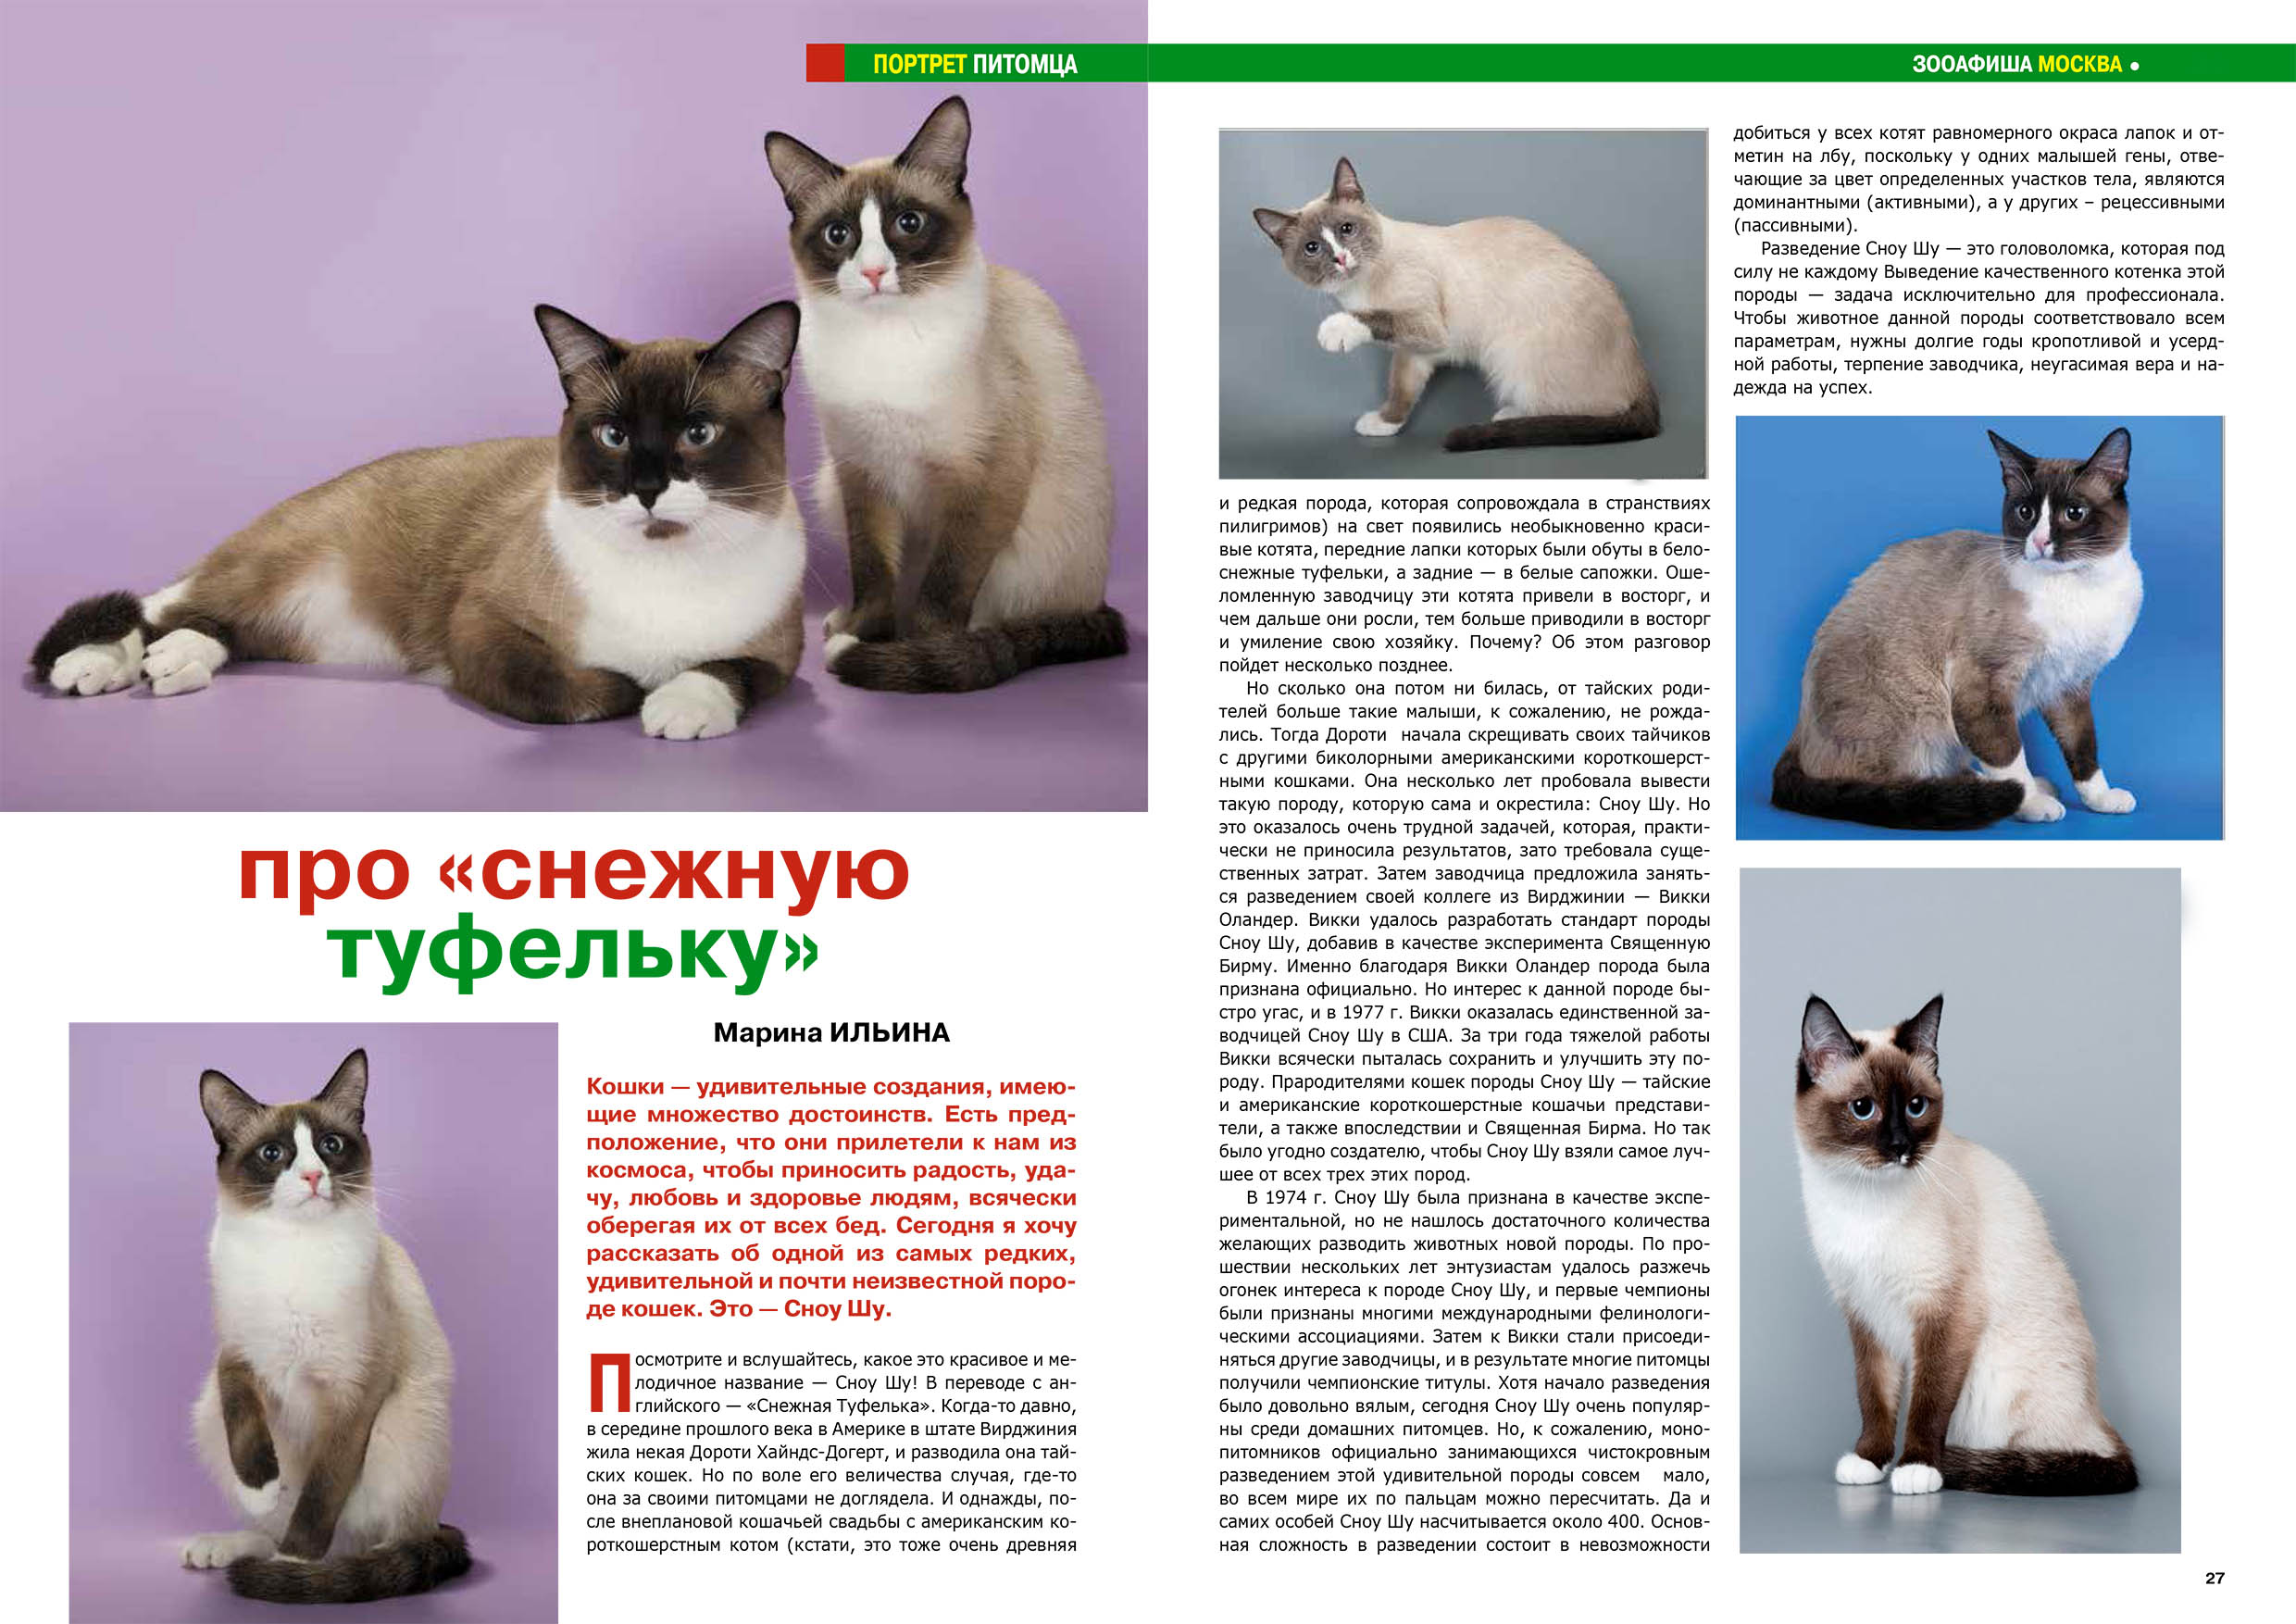 Сноу шу (порода кошек): особенности и внешний вид